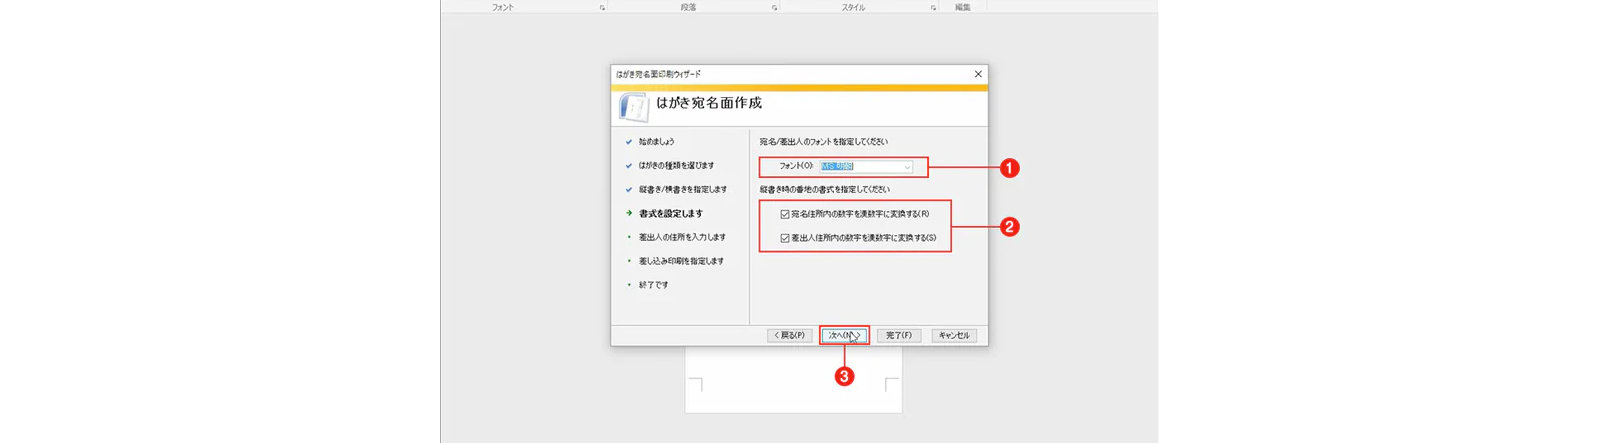 はがき顔印刷ウィザード画面 - フォント、住所番号から漢字番号への変換、返送された住所番号の漢字への変換、[次へ]ボタンは赤い枠線で囲まれています